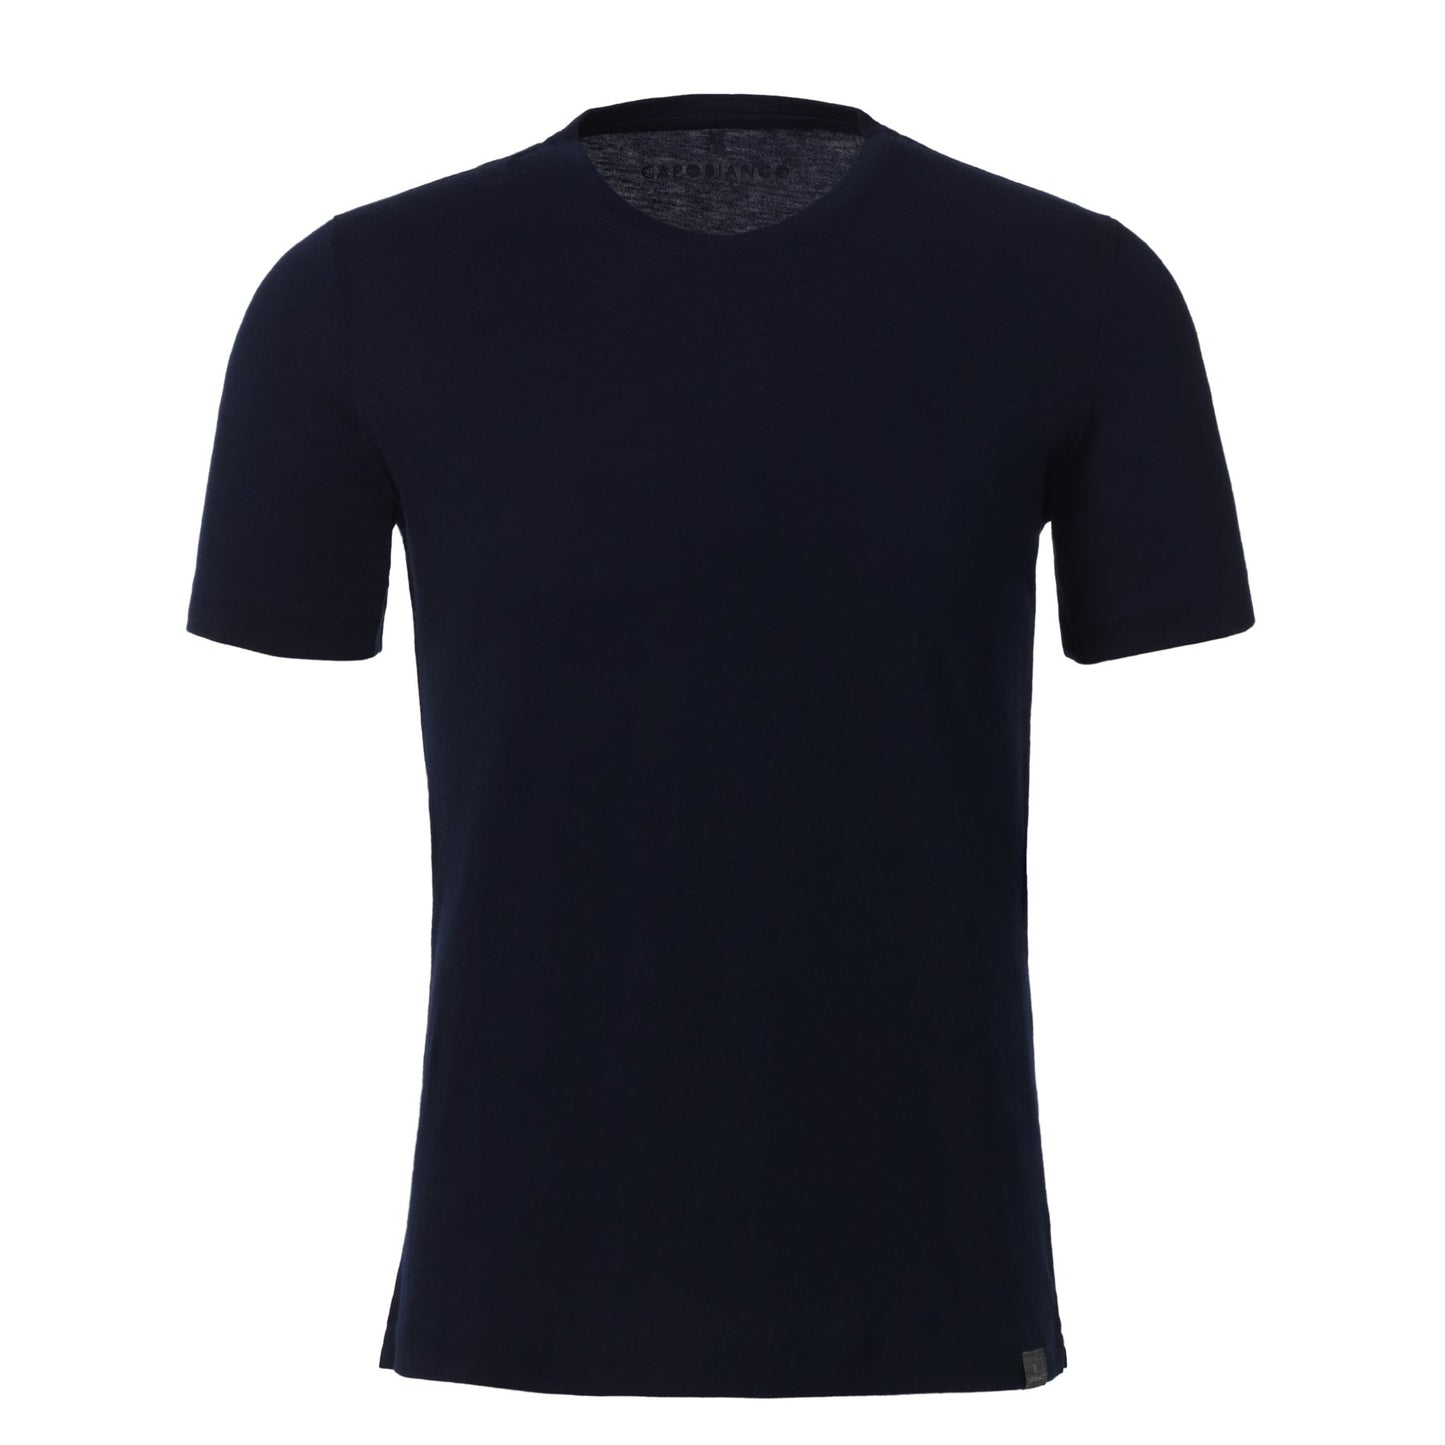 Capobianco Cotton and Cashmere-Blend Crew-Neck T-Shirt - SARTALE